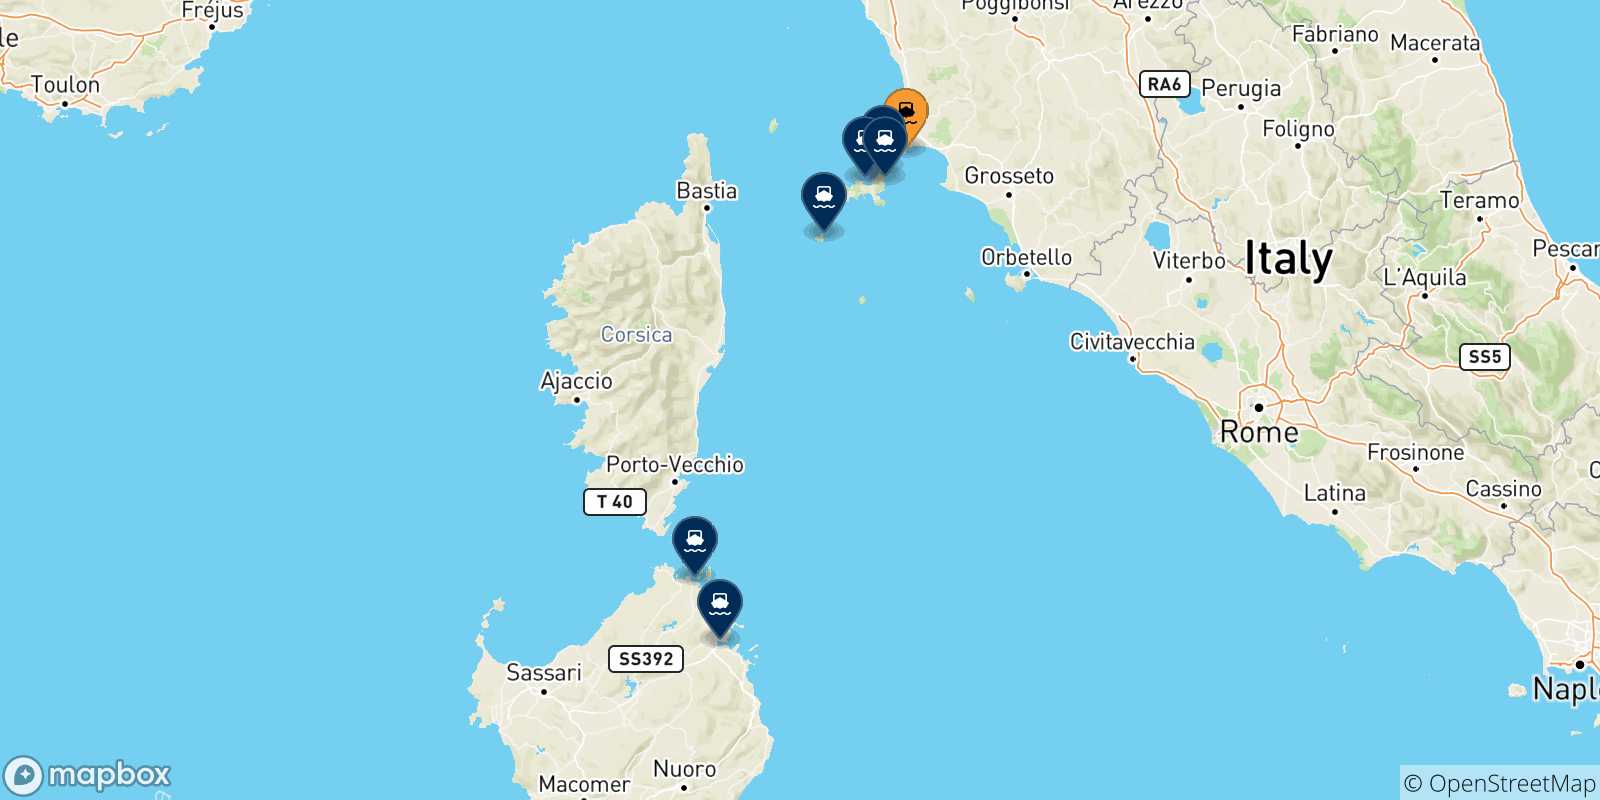 Mappa delle possibili rotte tra Piombino e l'Italia